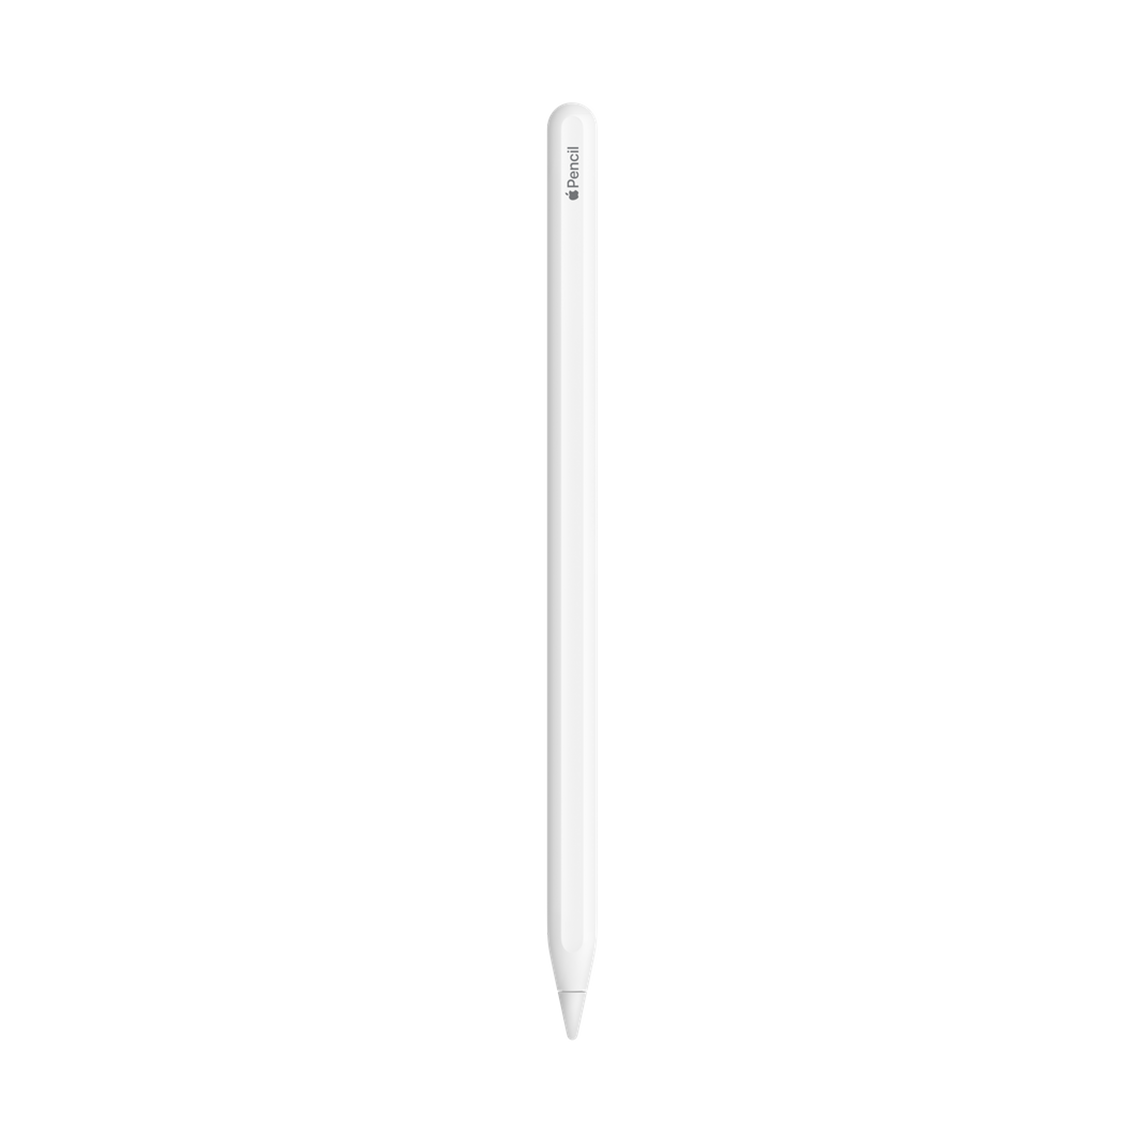 apple-ipad-pro-m1-12-9-inch-1tb-wi-ficellular